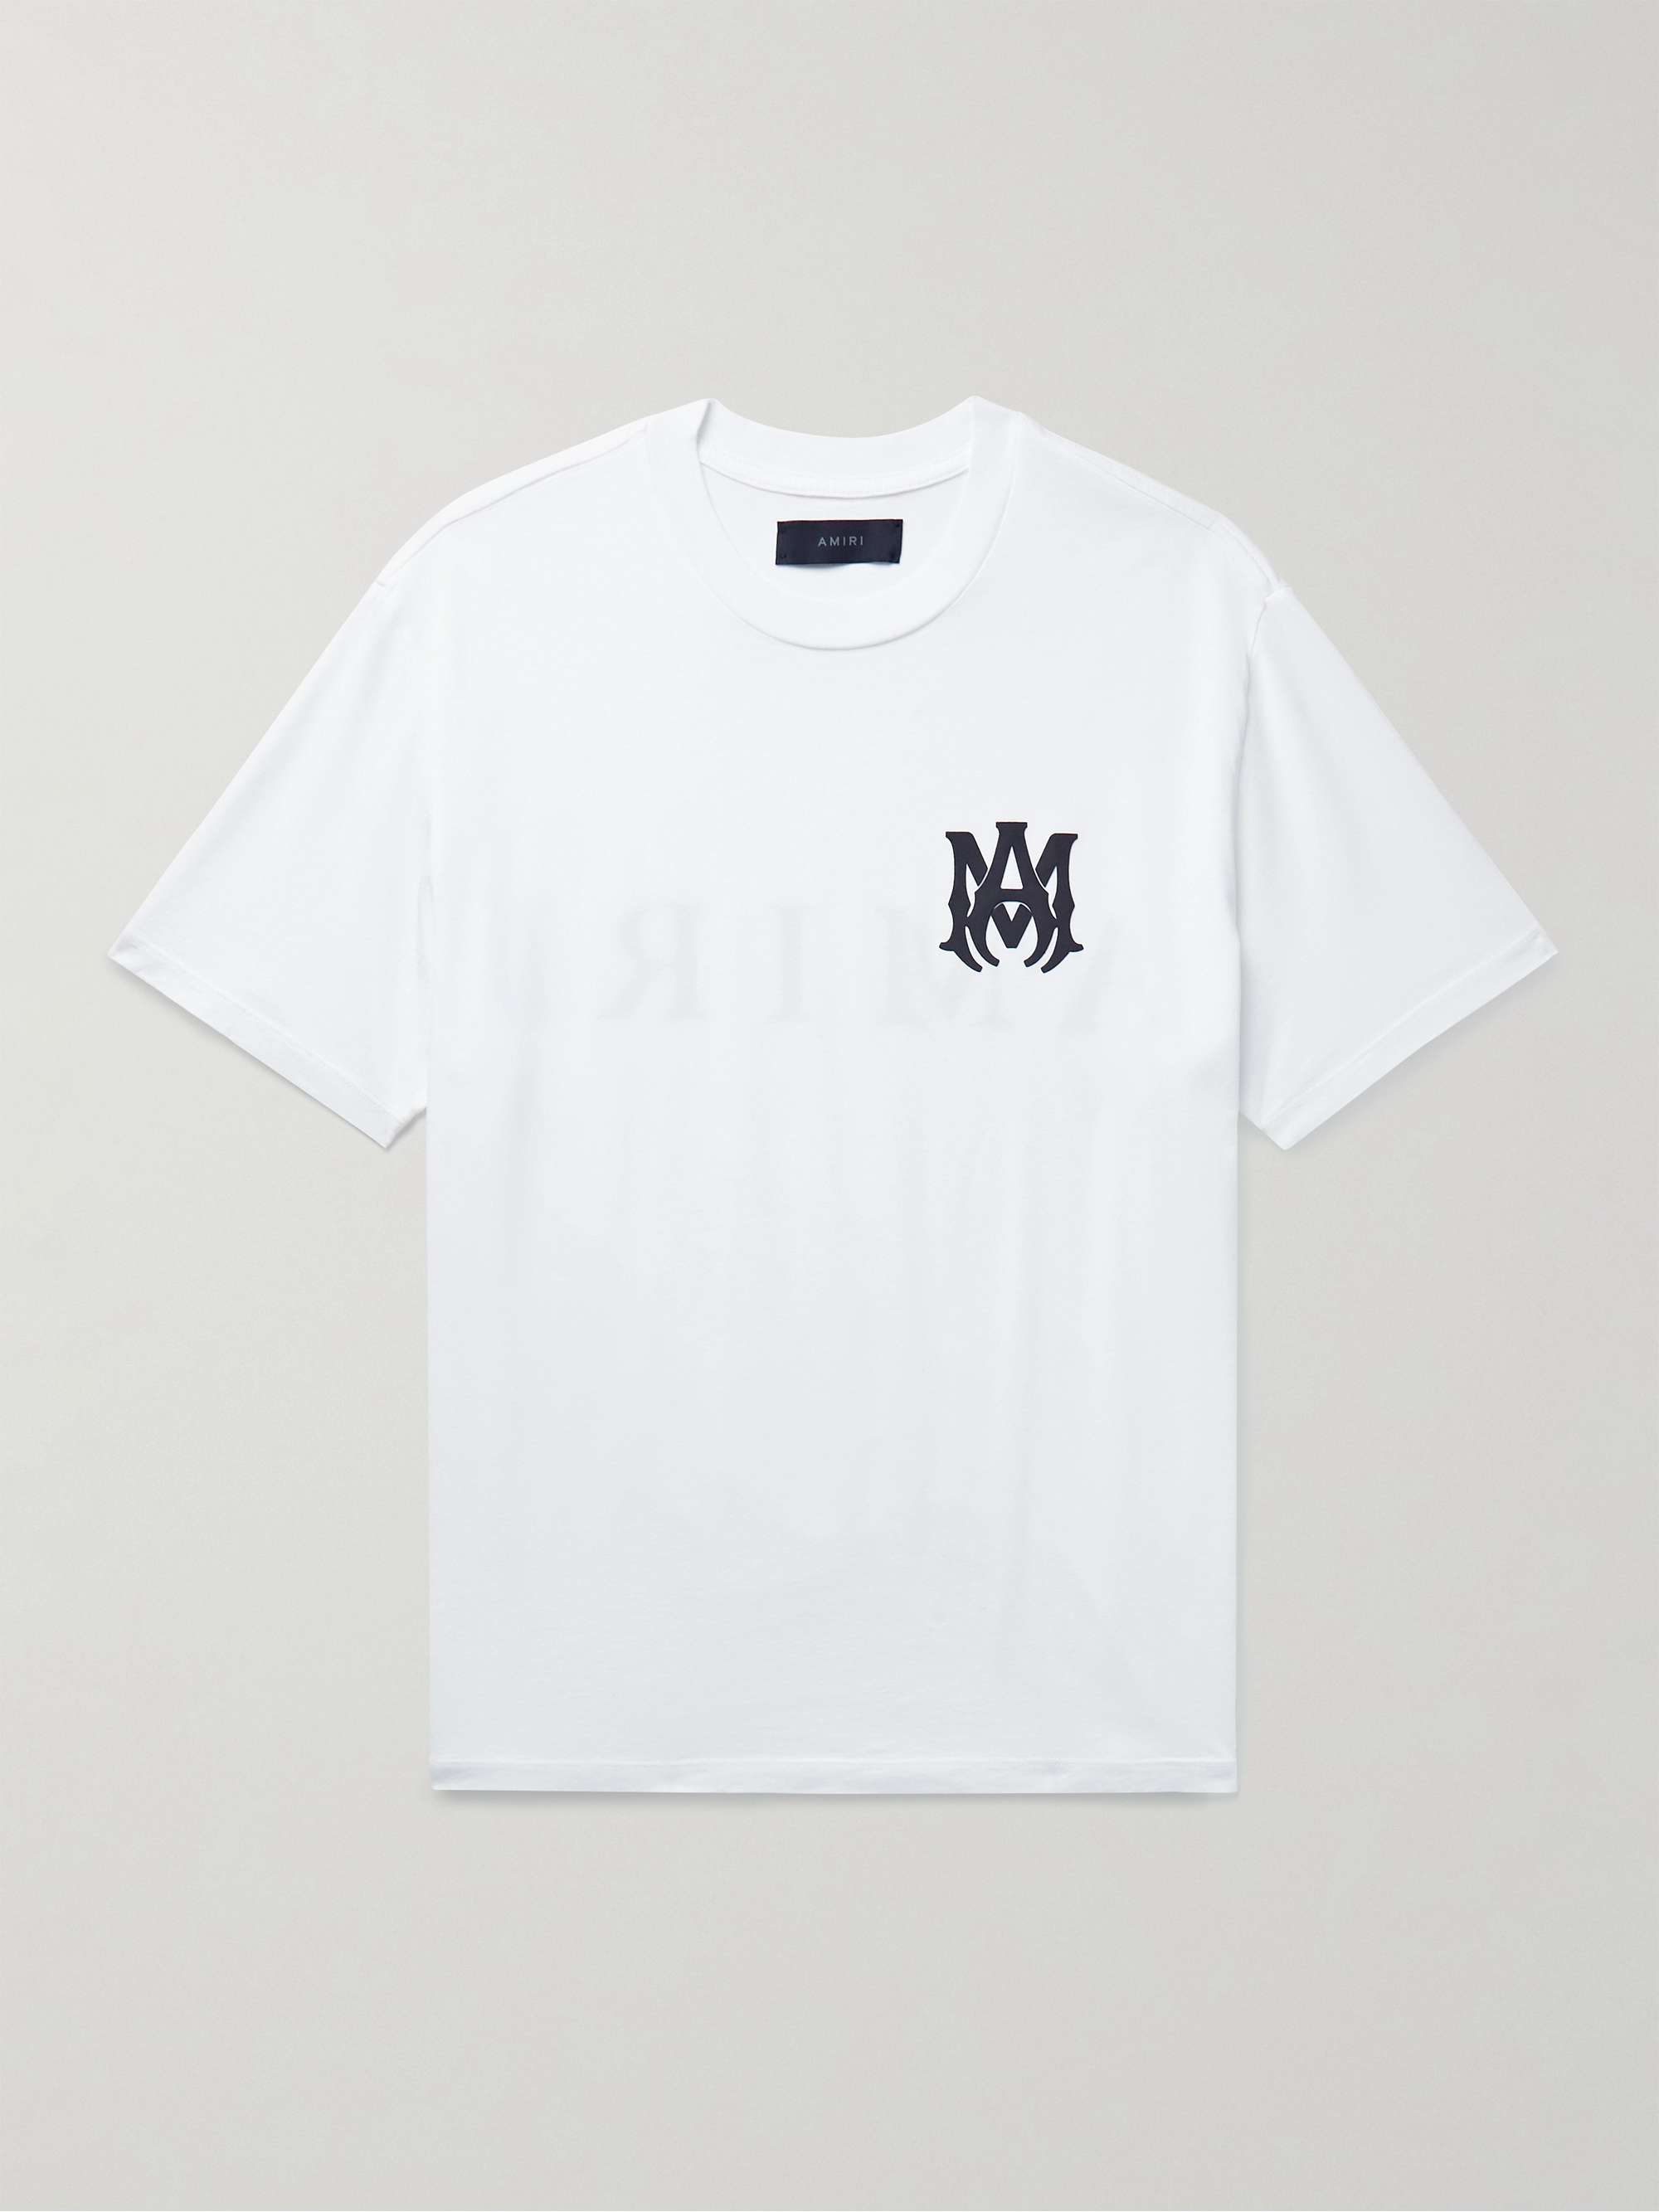 Amiri TシャツTシャツ/カットソー(半袖/袖なし)